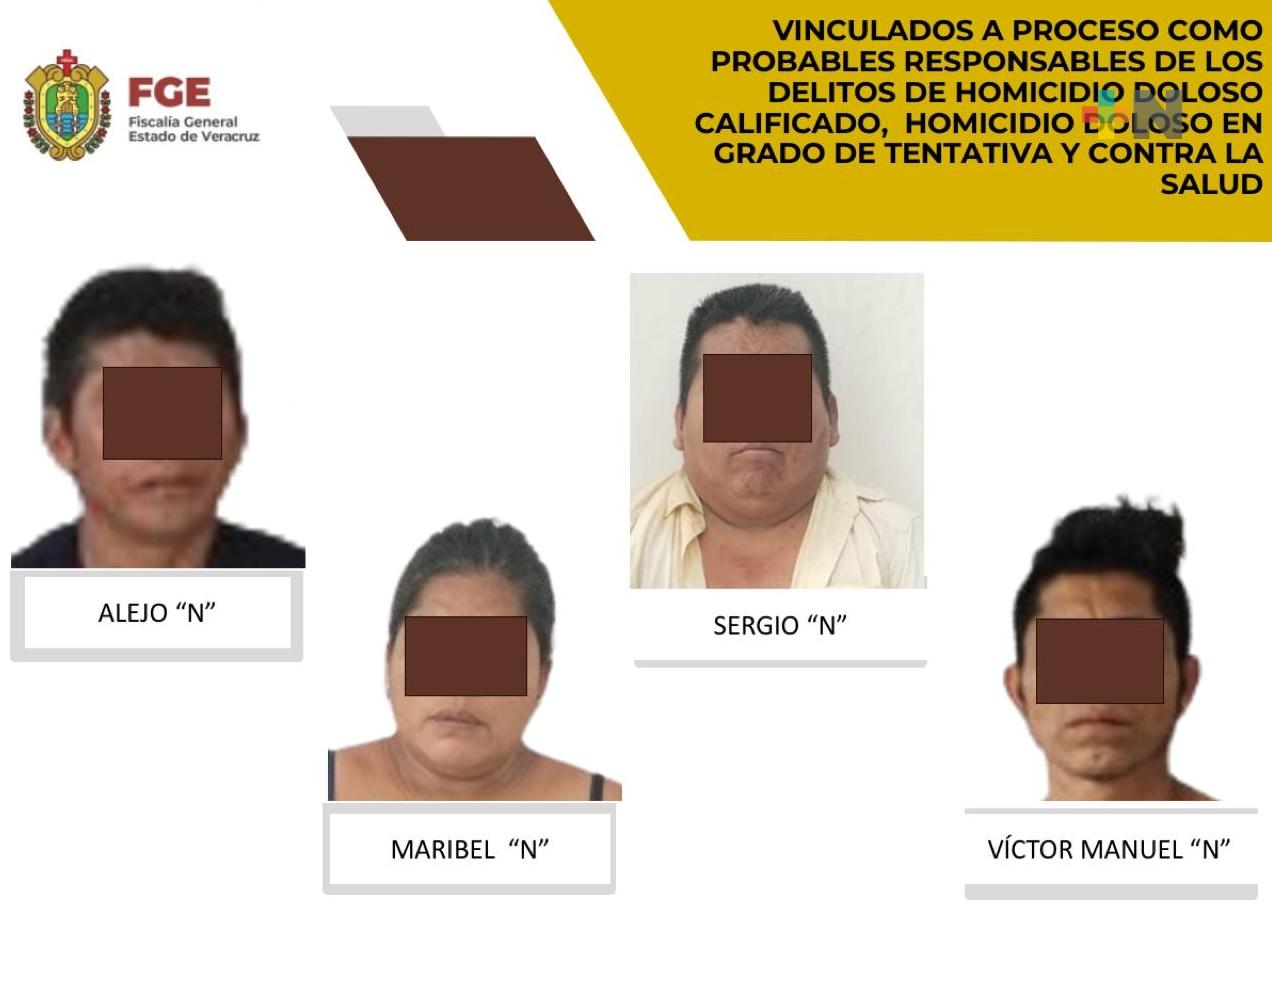 Vinculados a proceso los probables responsables del homicidio de tres personas en San Andrés Tuxtla